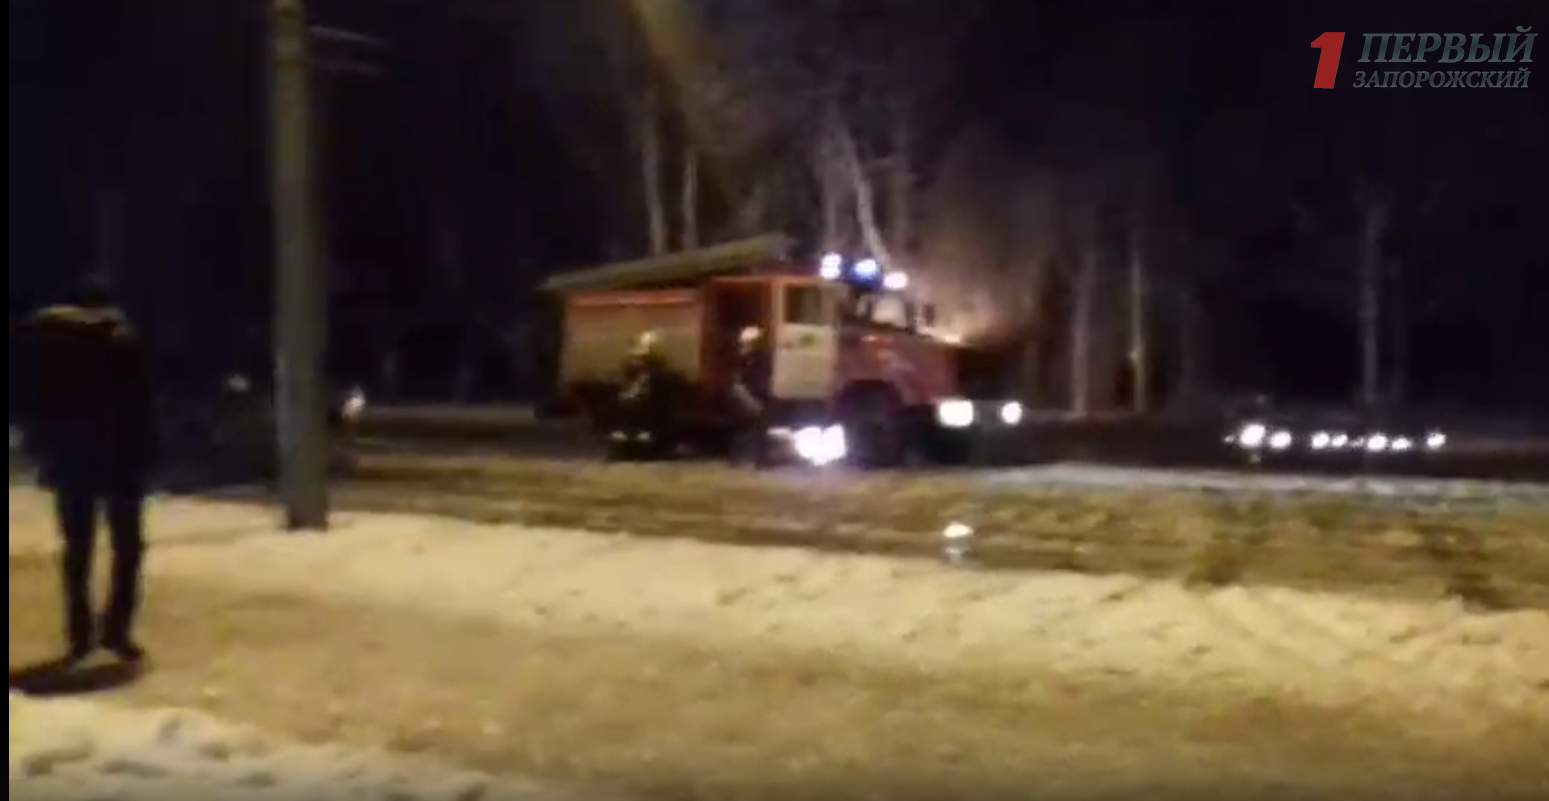 Появилось видео горящего возле Дворца культуры автомобиля - ВИДЕО